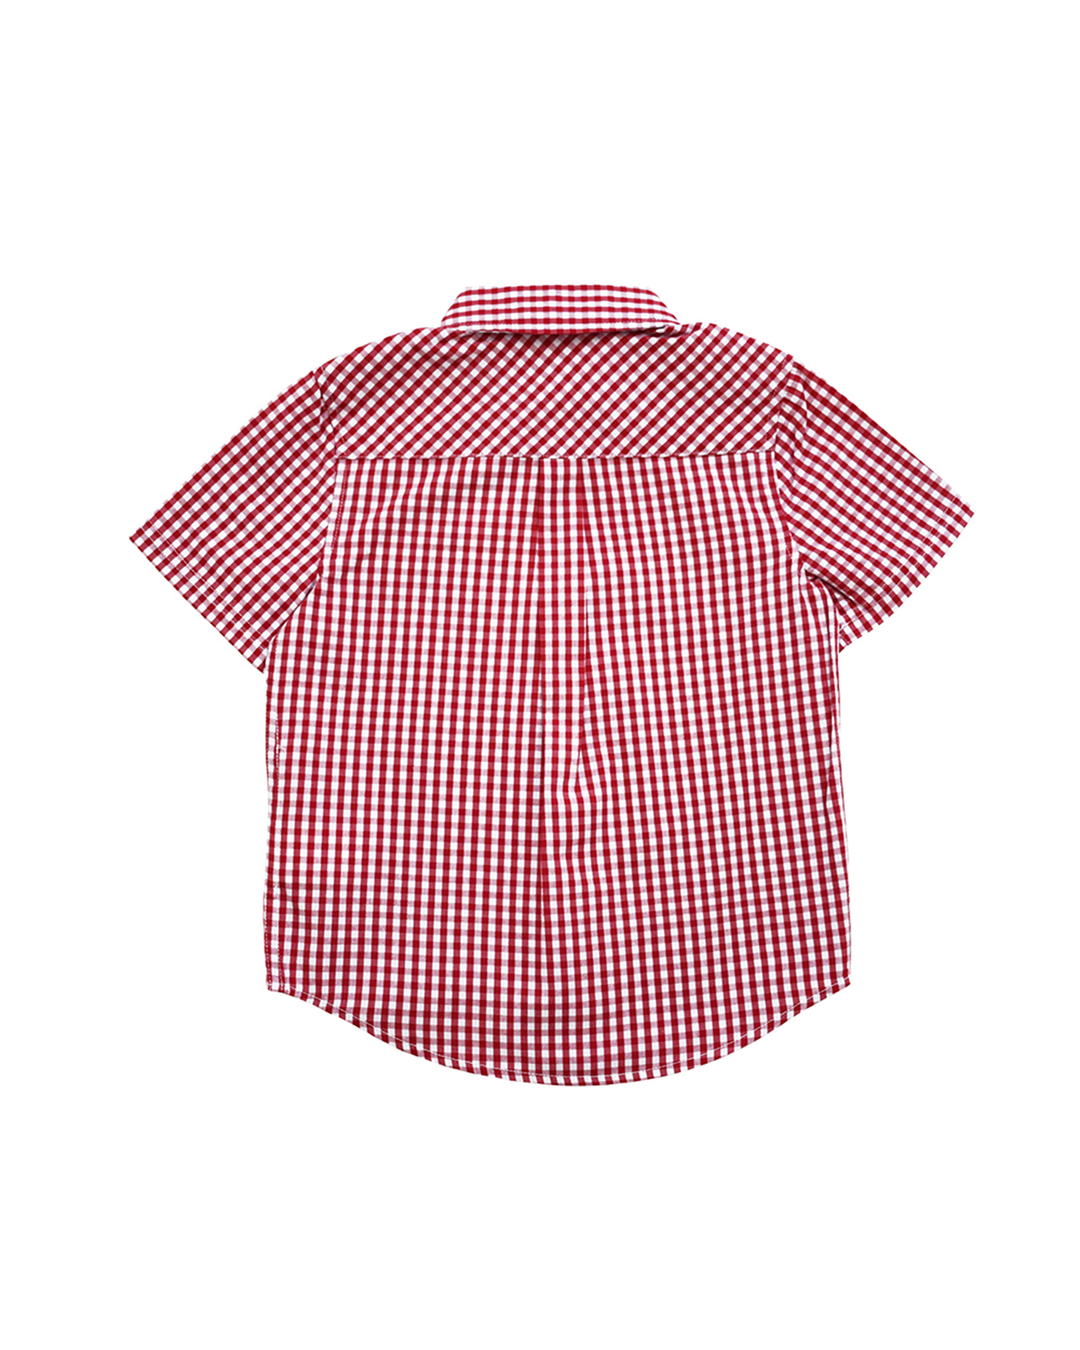 Camisa manga corta, de cuadros roja y blanca